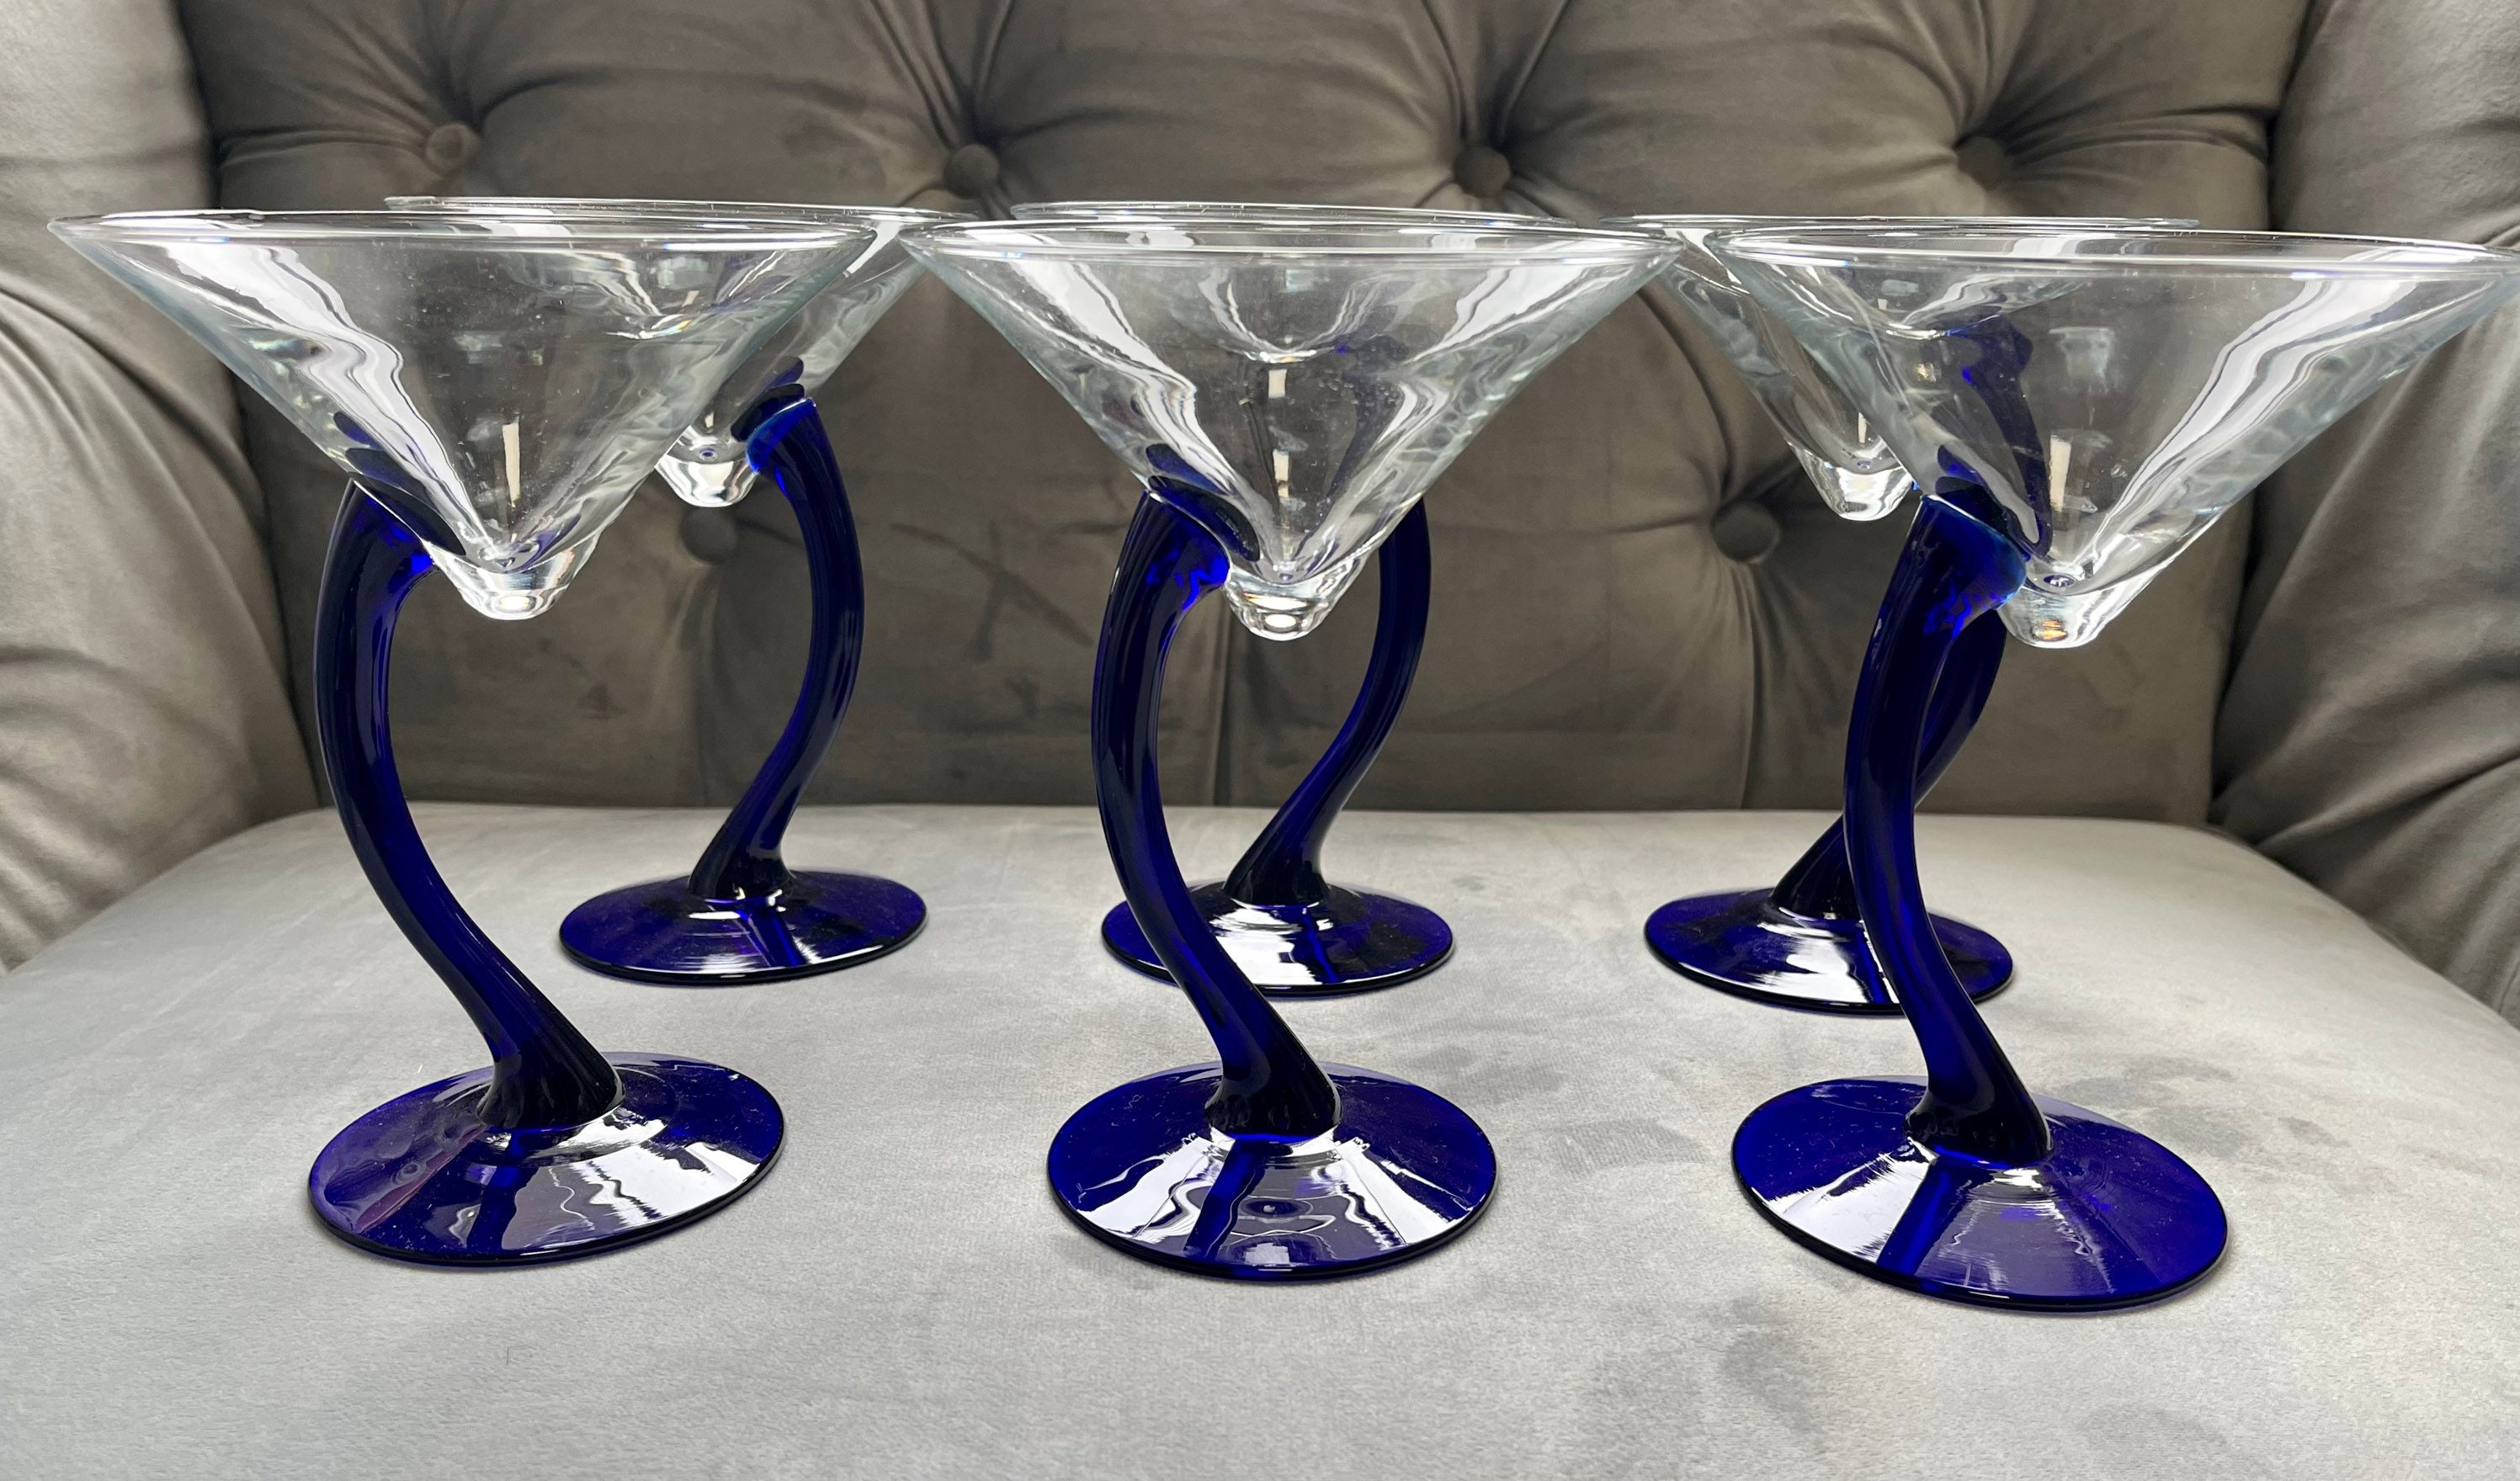 Vintage Cobalt Blue Cocktail ~ Martini Glasses, Set of 4, Cobalt Blue  Twisted Stemmed Cocktail glasses Vintage Cobalt Blue Champagne Glasses